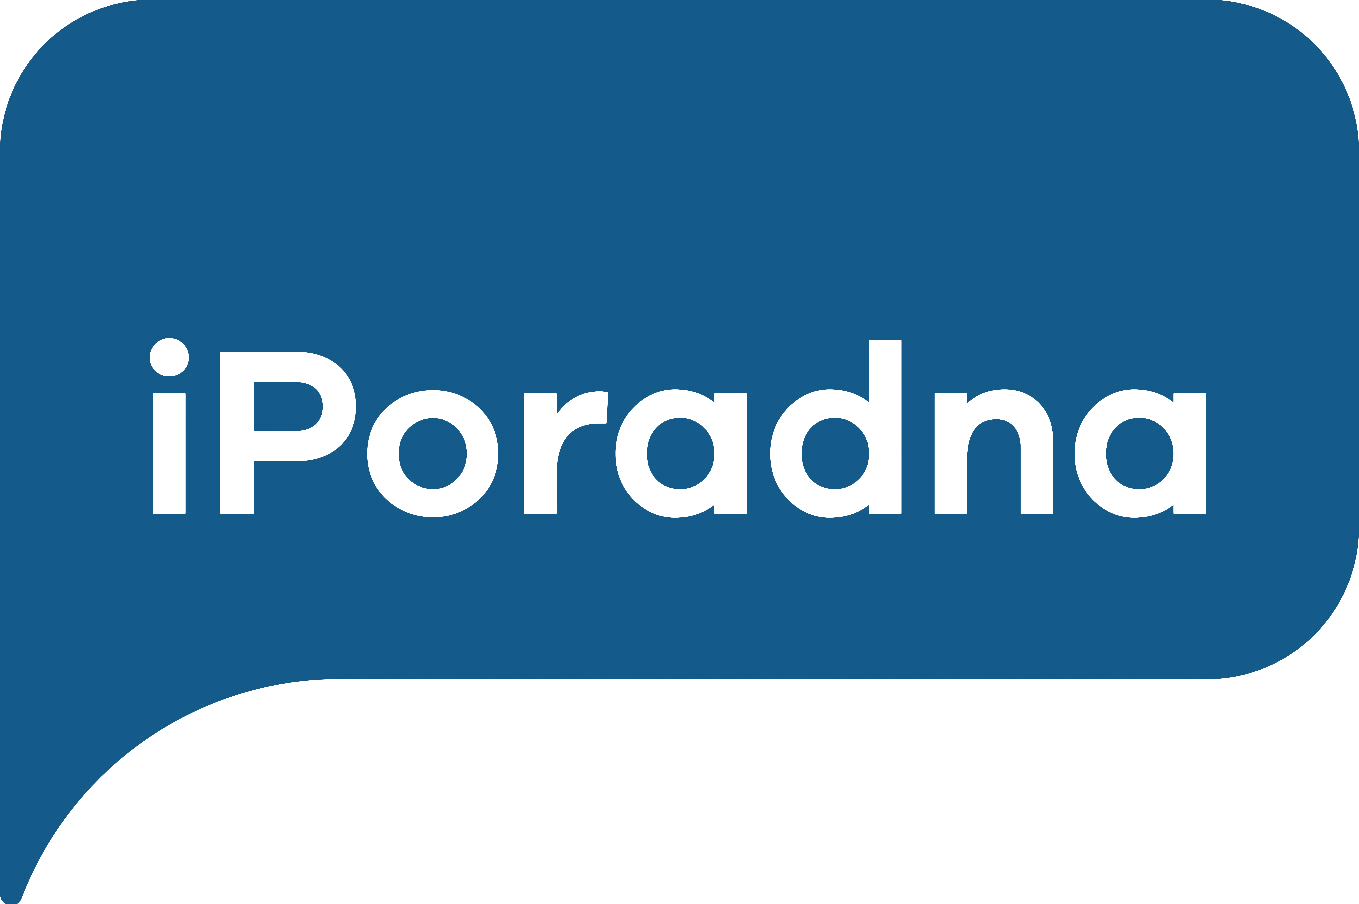 poradna_logo_banner.png